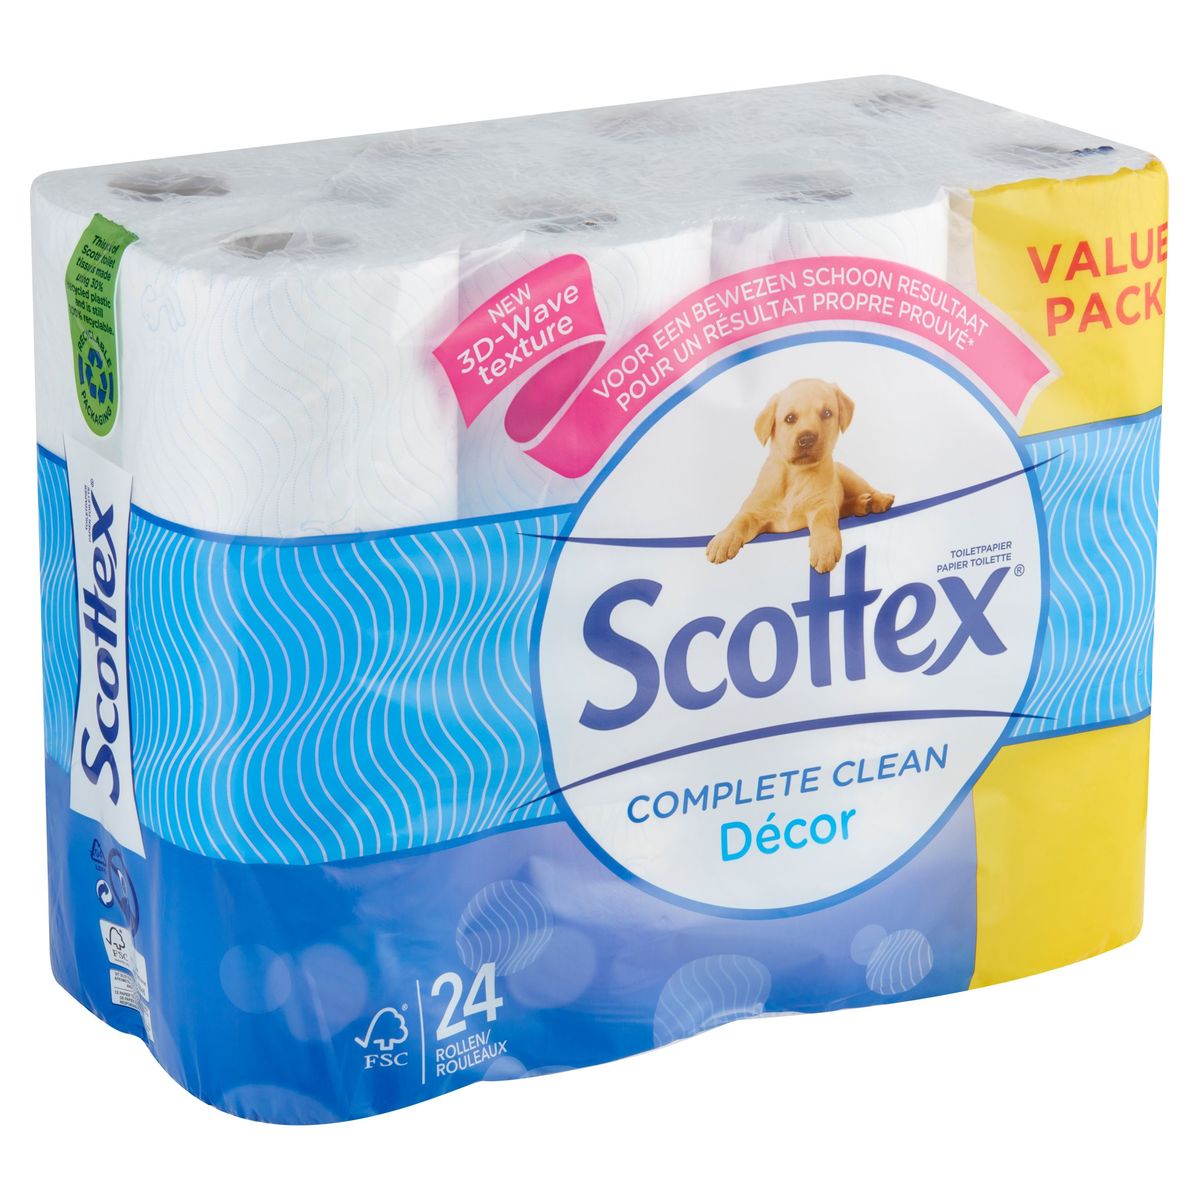 Scottex Complete Clean Décor Toiletpapier Value Pack 24 Rollen